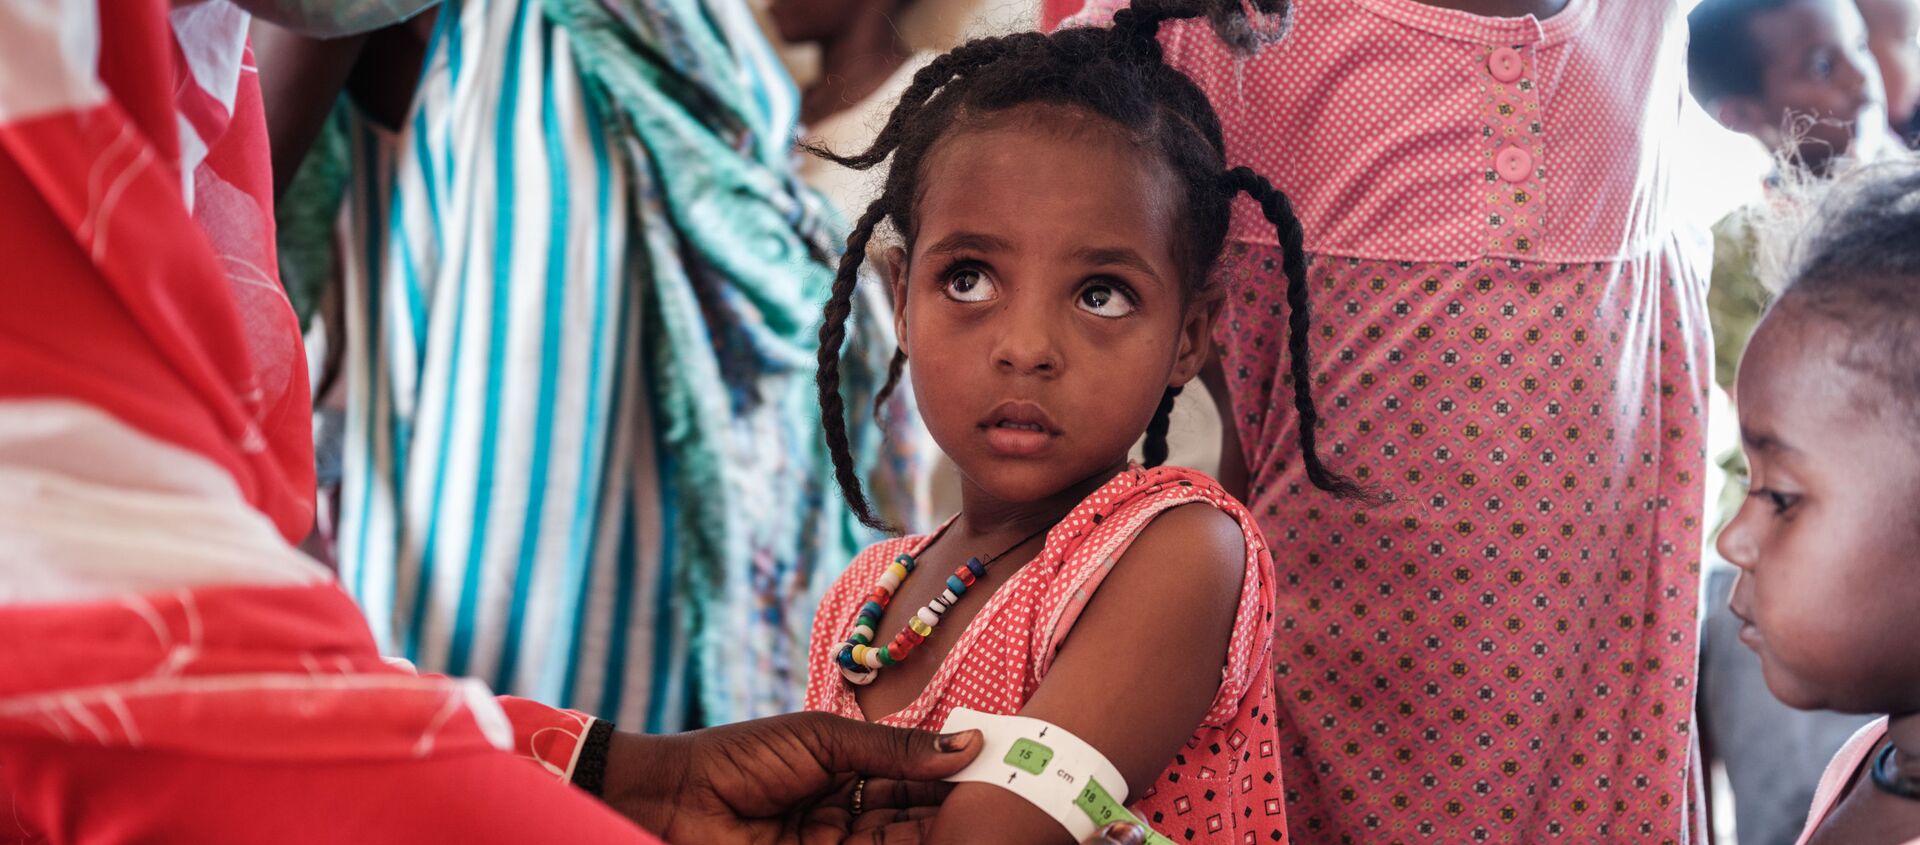 طفلة إثيوبية، تبلغ من العمر 4 سنوات، لاجئة من تيغراي، يتم فحصها في في مركز عبور فيليج إيت لسوء التغذية  بالقرب من الحدود الإثيوبية في القضارف شرق السودان، 2 ديسمبر 2020. - سبوتنيك عربي, 1920, 10.06.2021